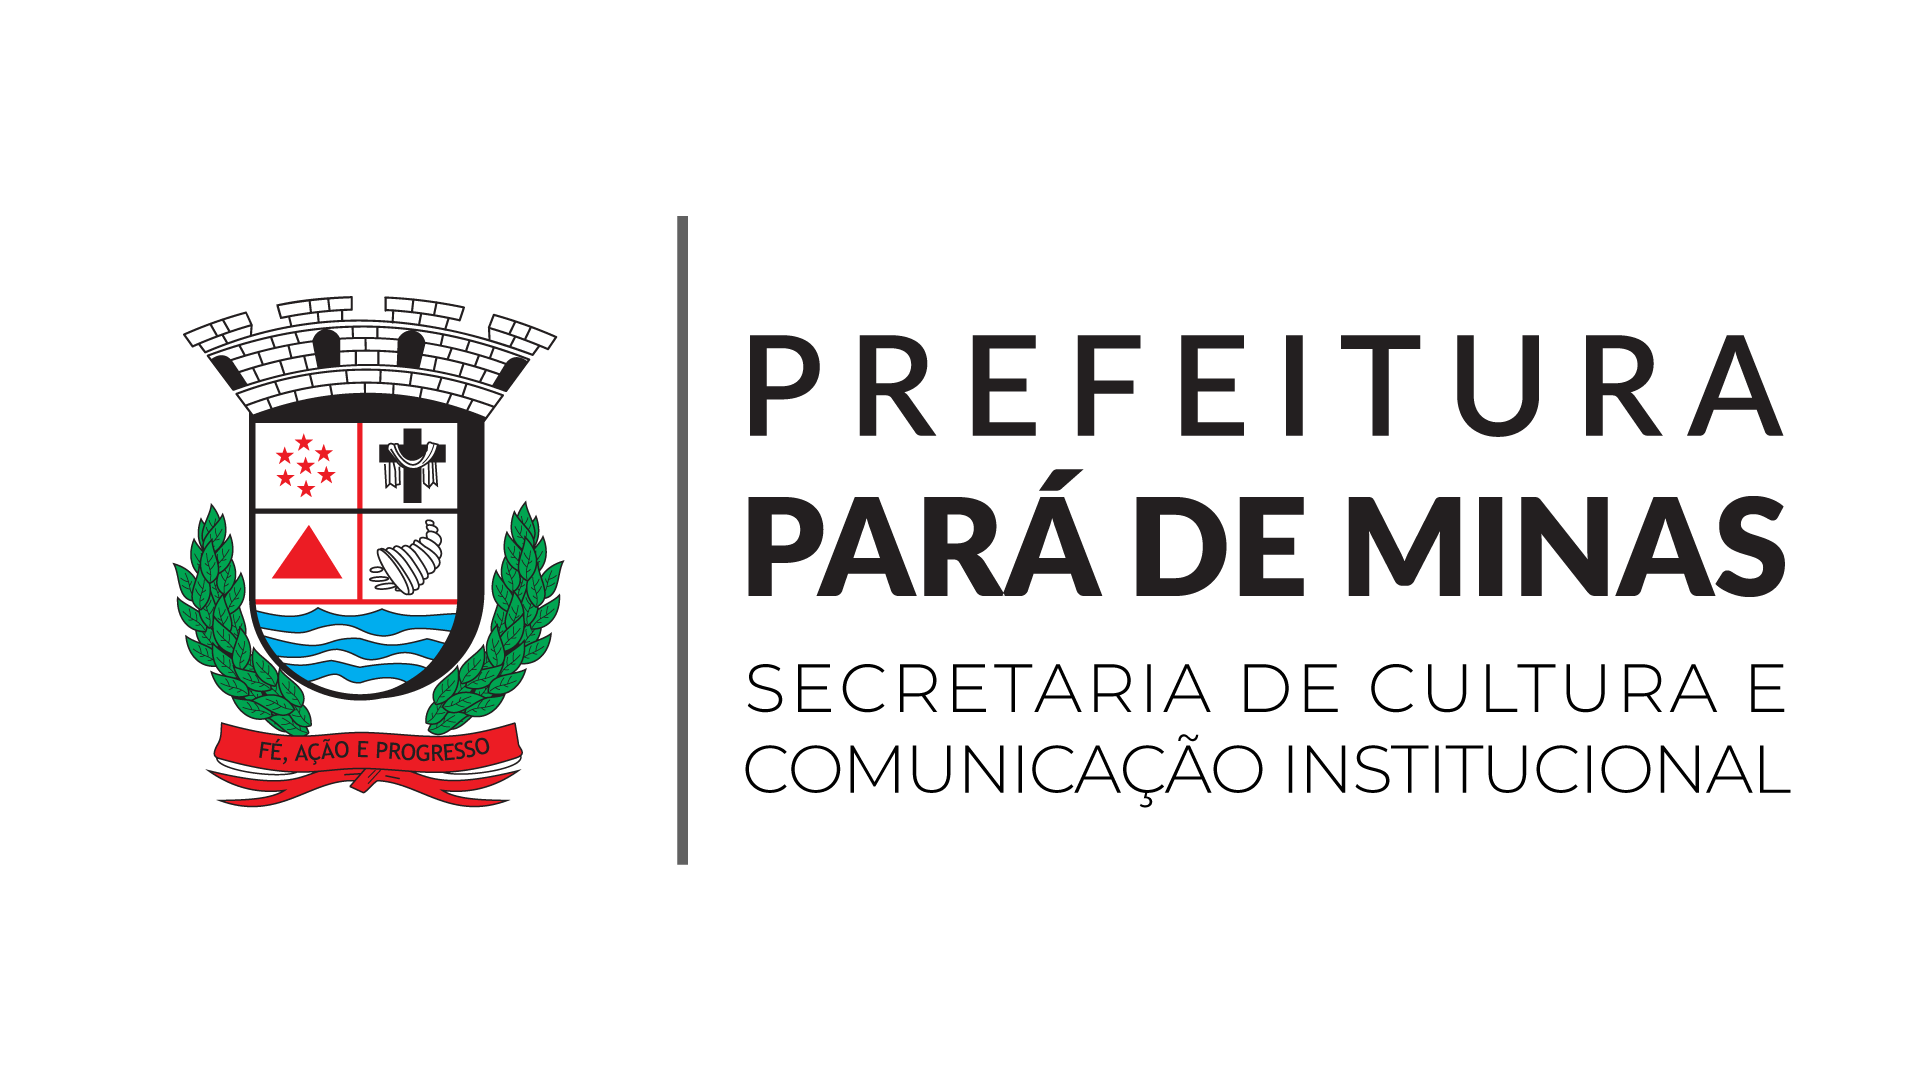 app-home/api-modulos/secretarias/img/25/58/brasão+secretaria_secultcom.png